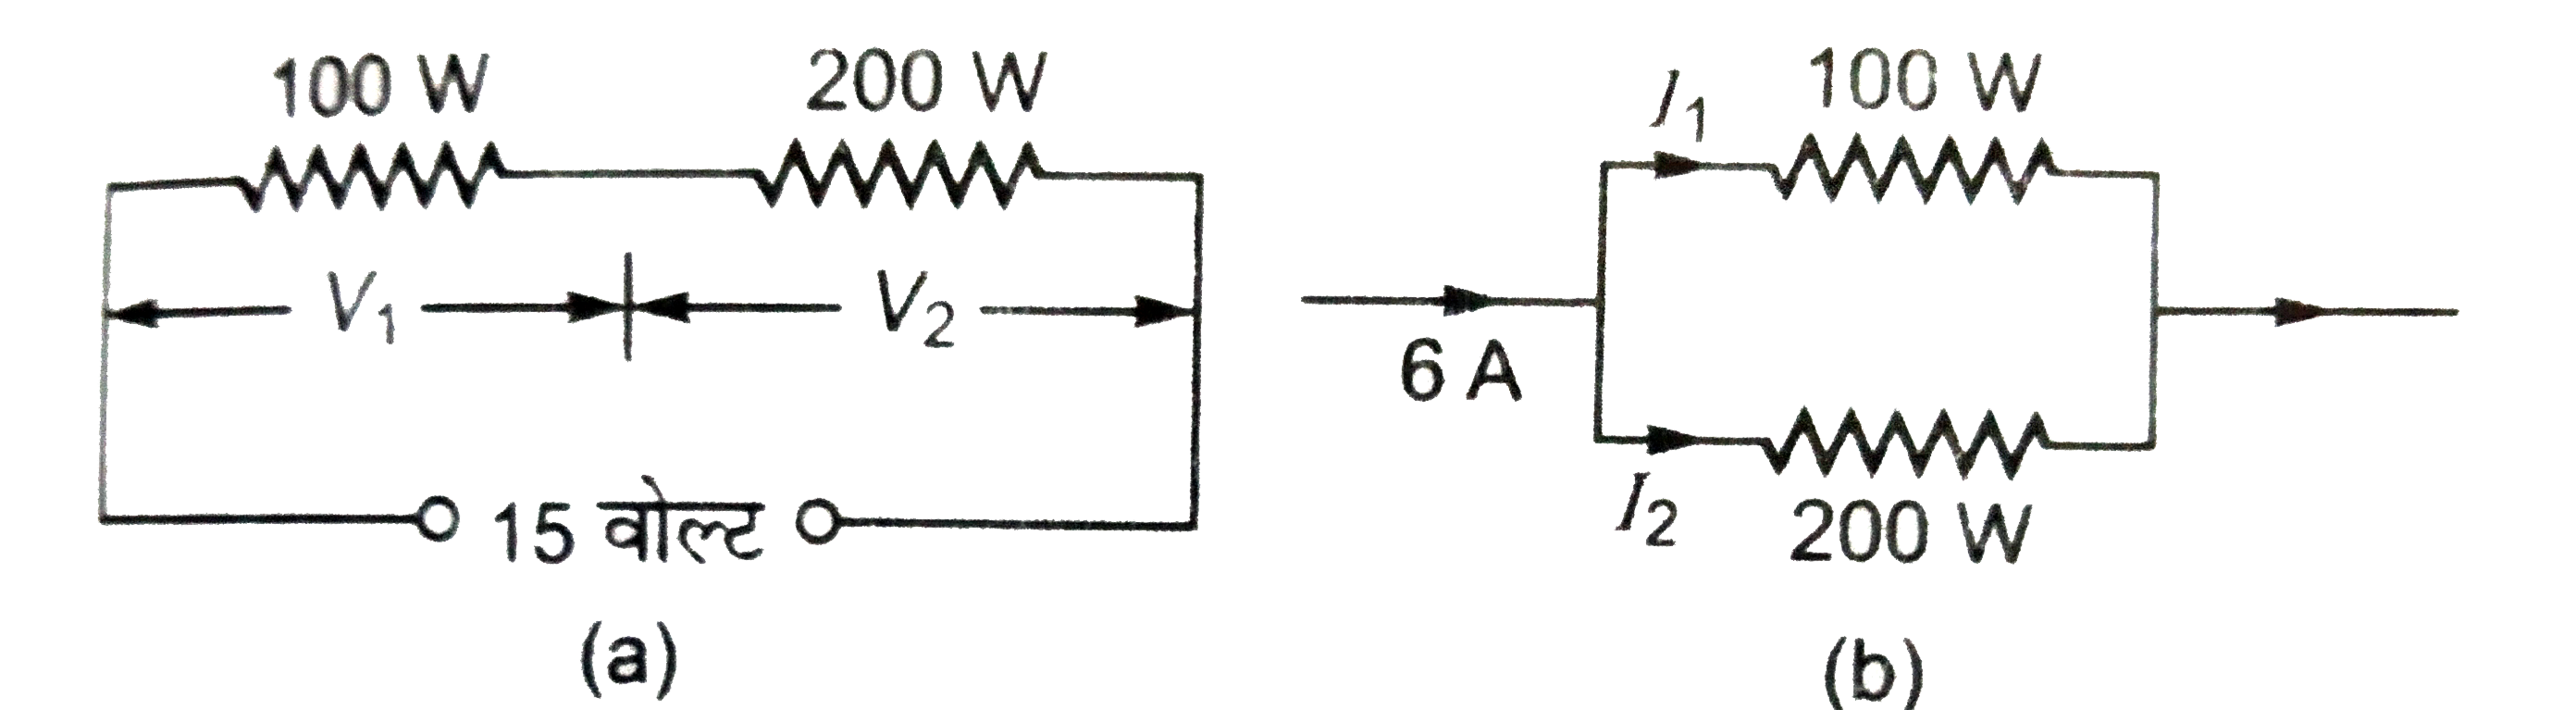 (A)चित्र(a) में प्रत्येक प्रतिरोध के सिरों का विभवांतर ज्ञात कीजिये।   (B) चित्र(b) में प्रत्येक प्रतिरोध में प्रवाहित धारा का मान ज्ञात कीजिये